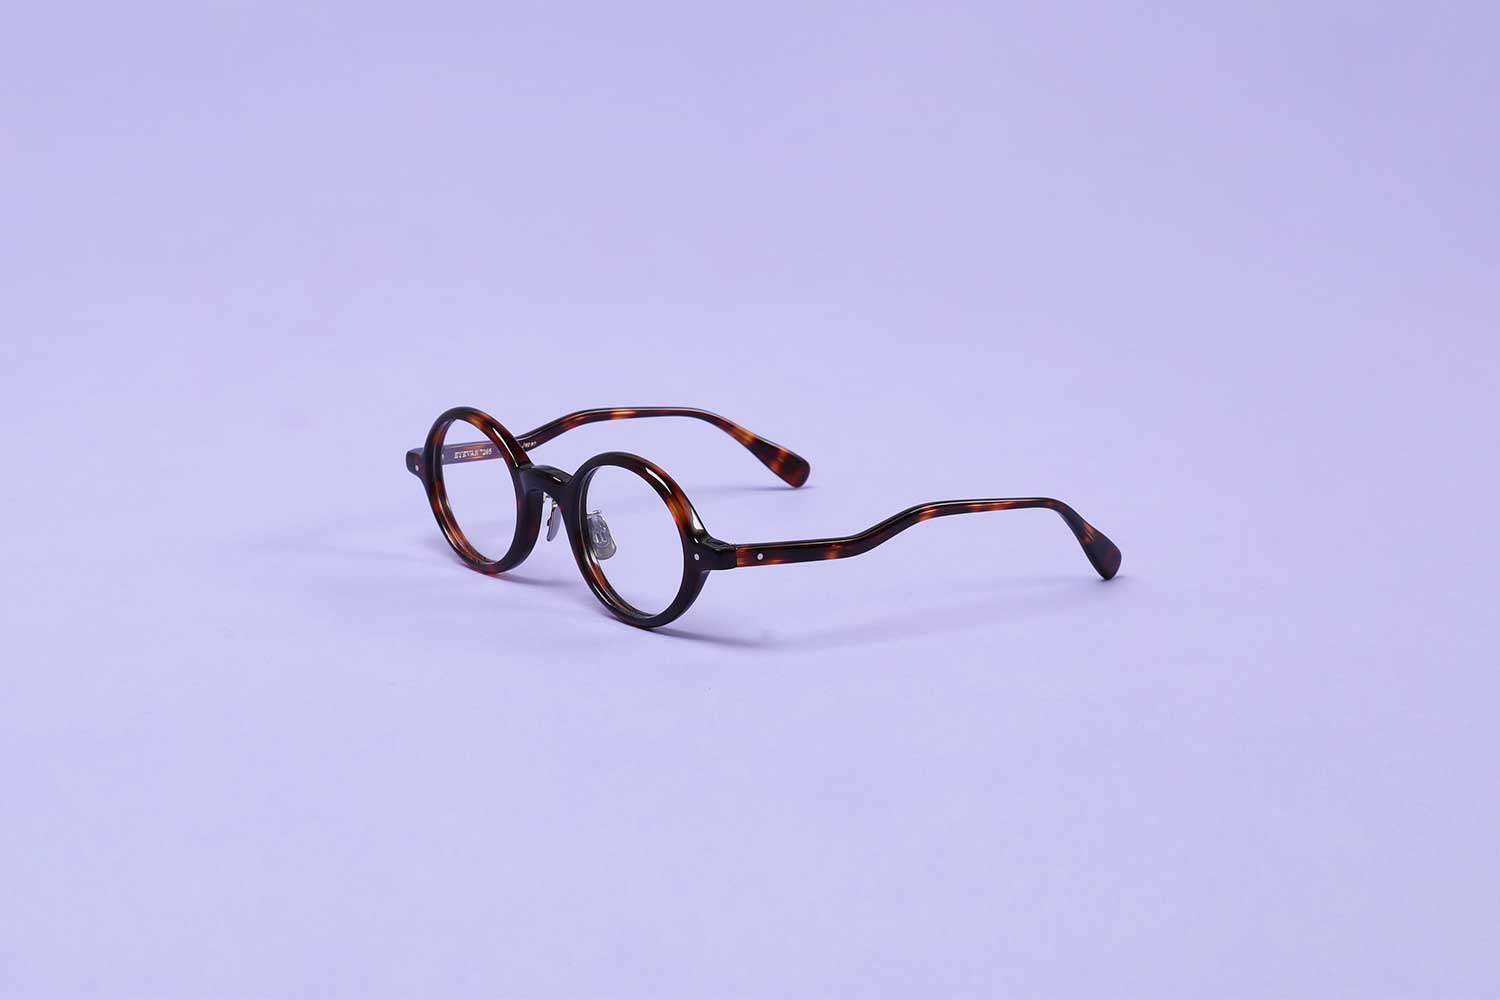 〈アイヴァン 7285〉の眼鏡